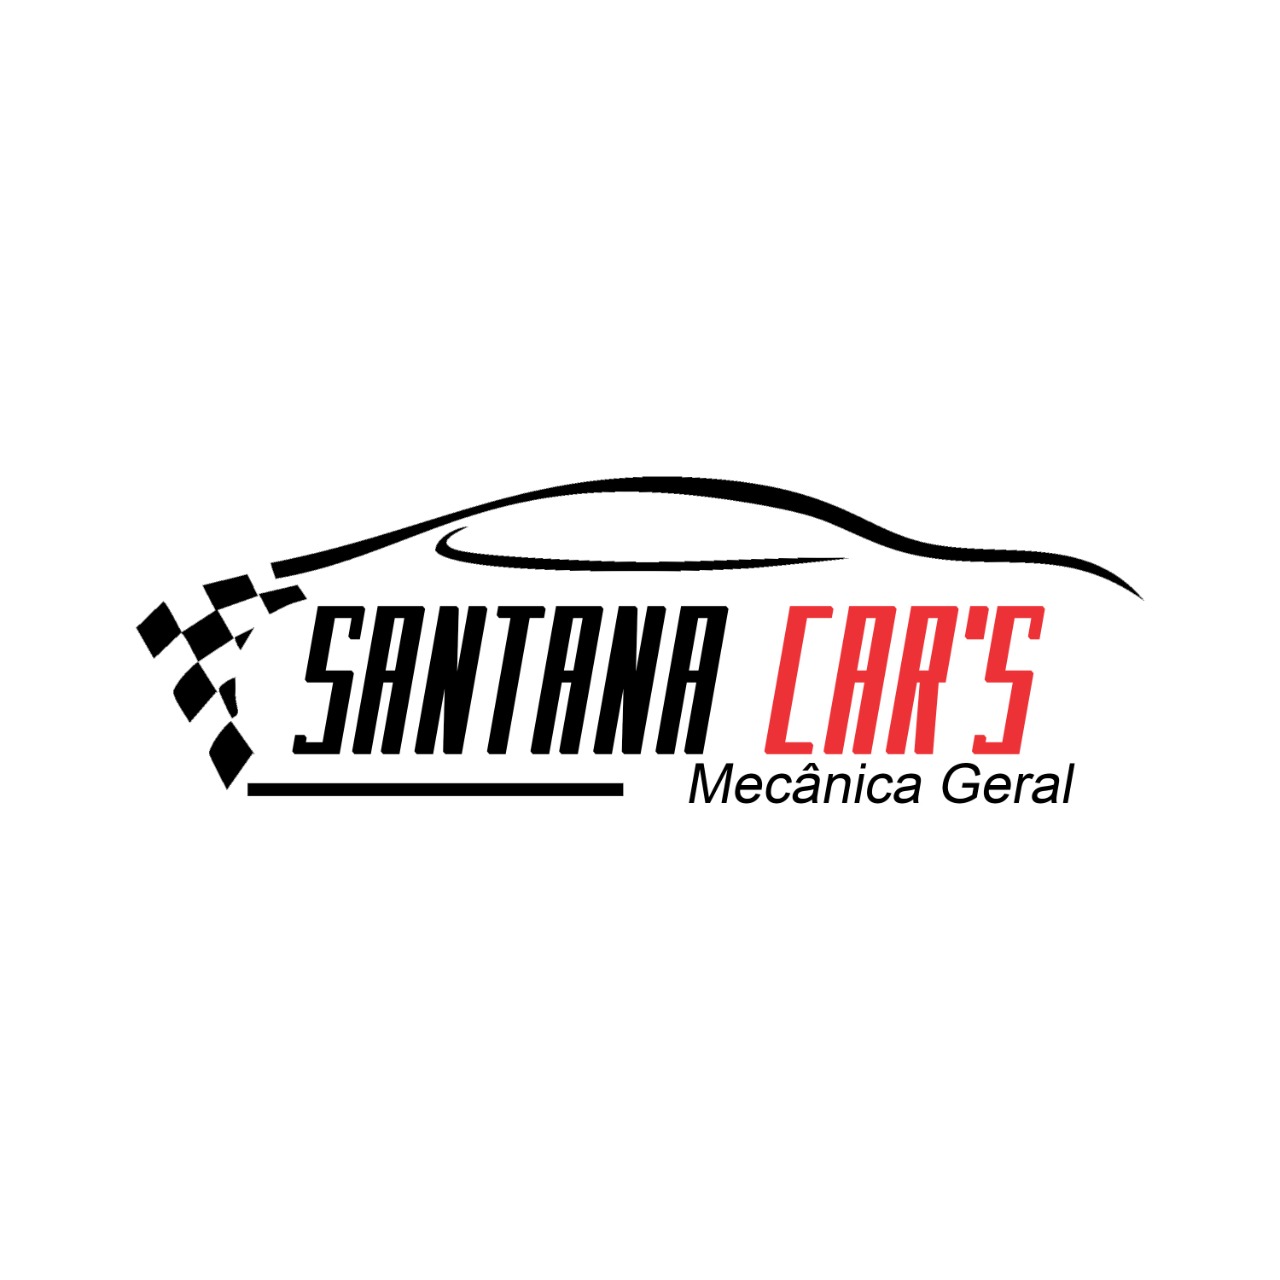 Santana Car´s Mecânica Geral